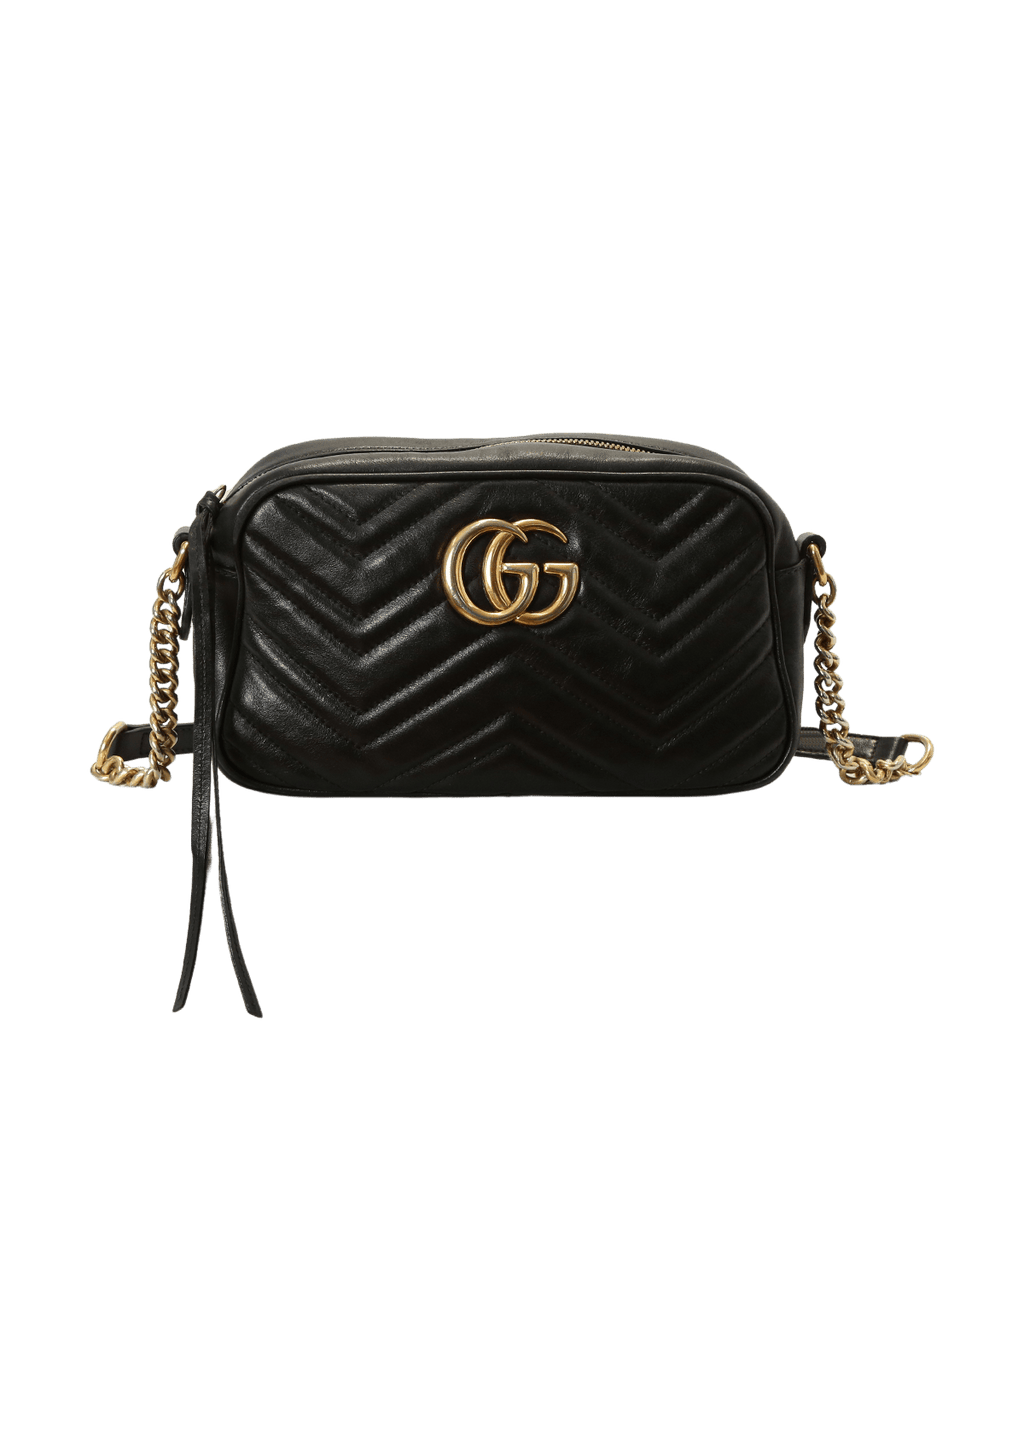 Bolsa com Alça Gucci Marmont GG Preta Original - BHSS4